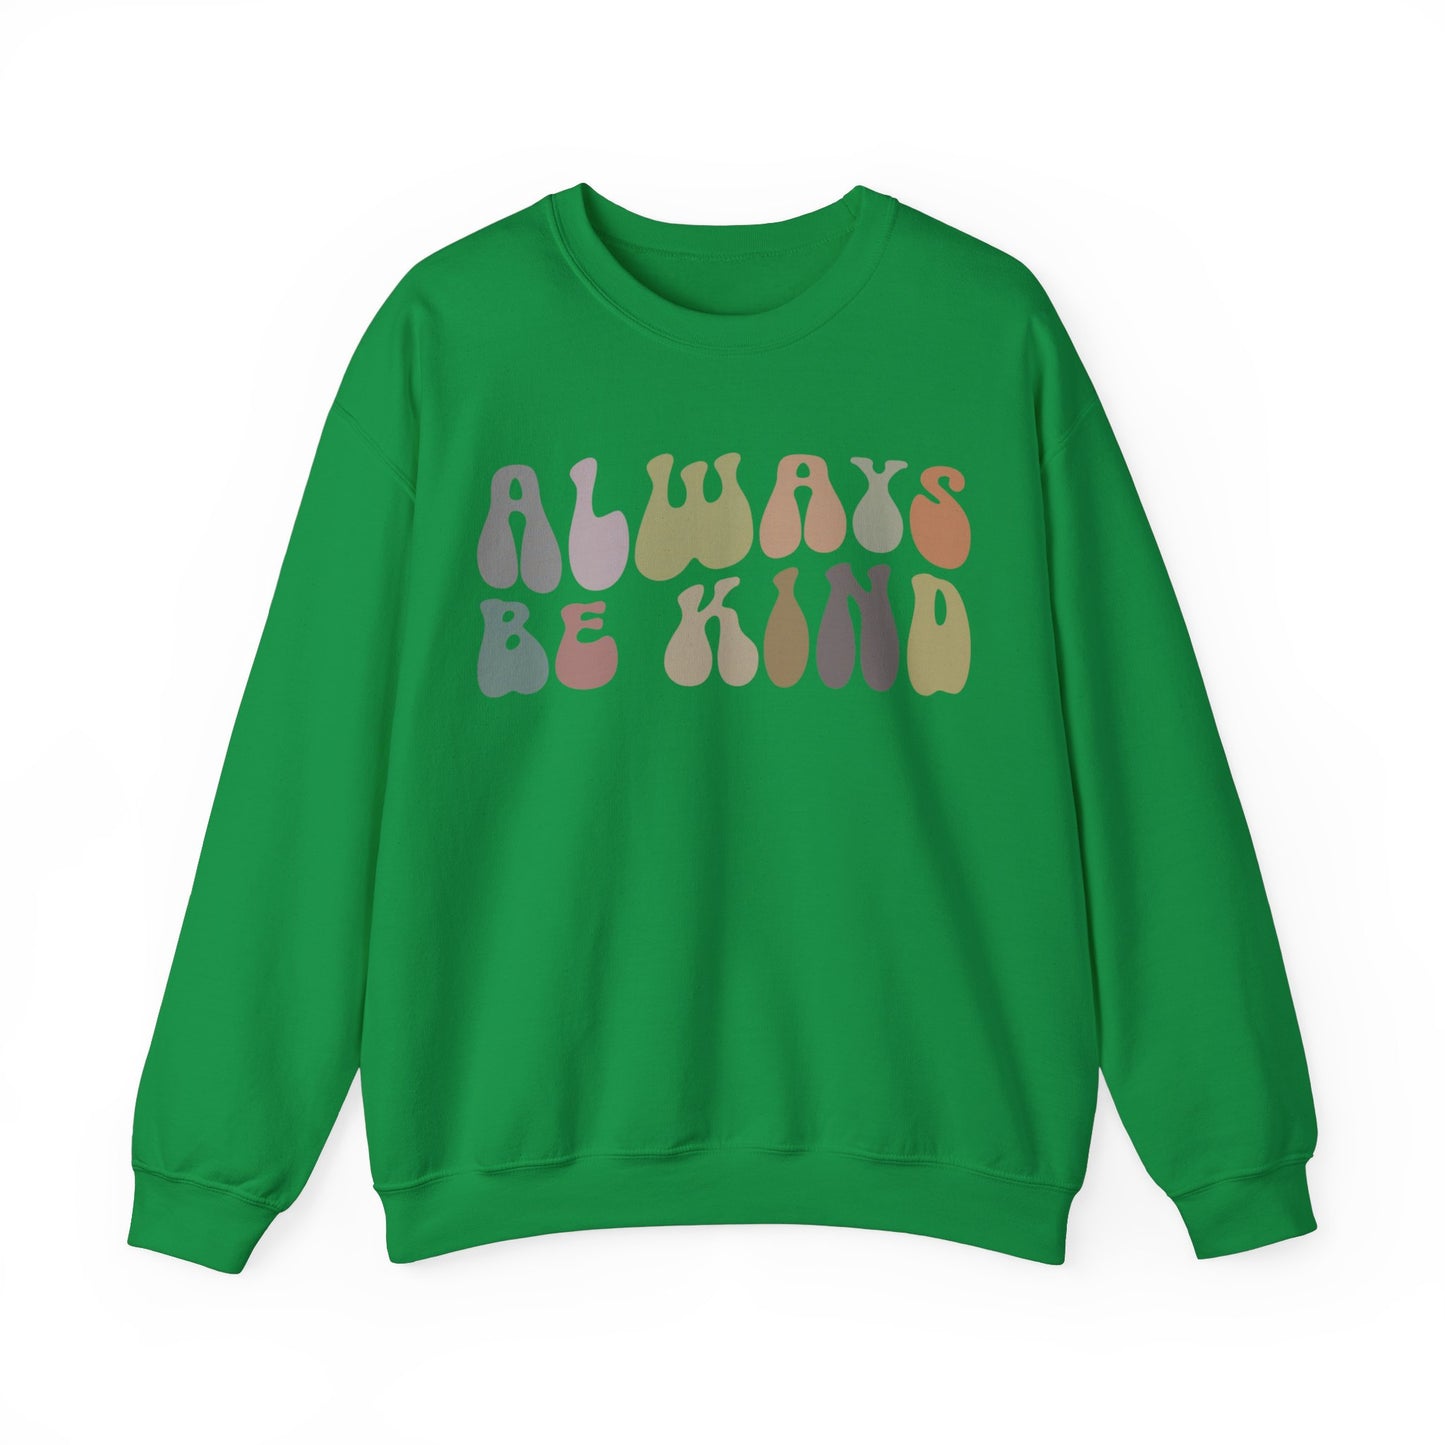 Always Be Kind Sweatshirt, Positivity Sweatshirt, Kind Mom Sweatshirt, Be a Kind Human Sweatshirt, Cute Inspirational Sweatshirt, S1371